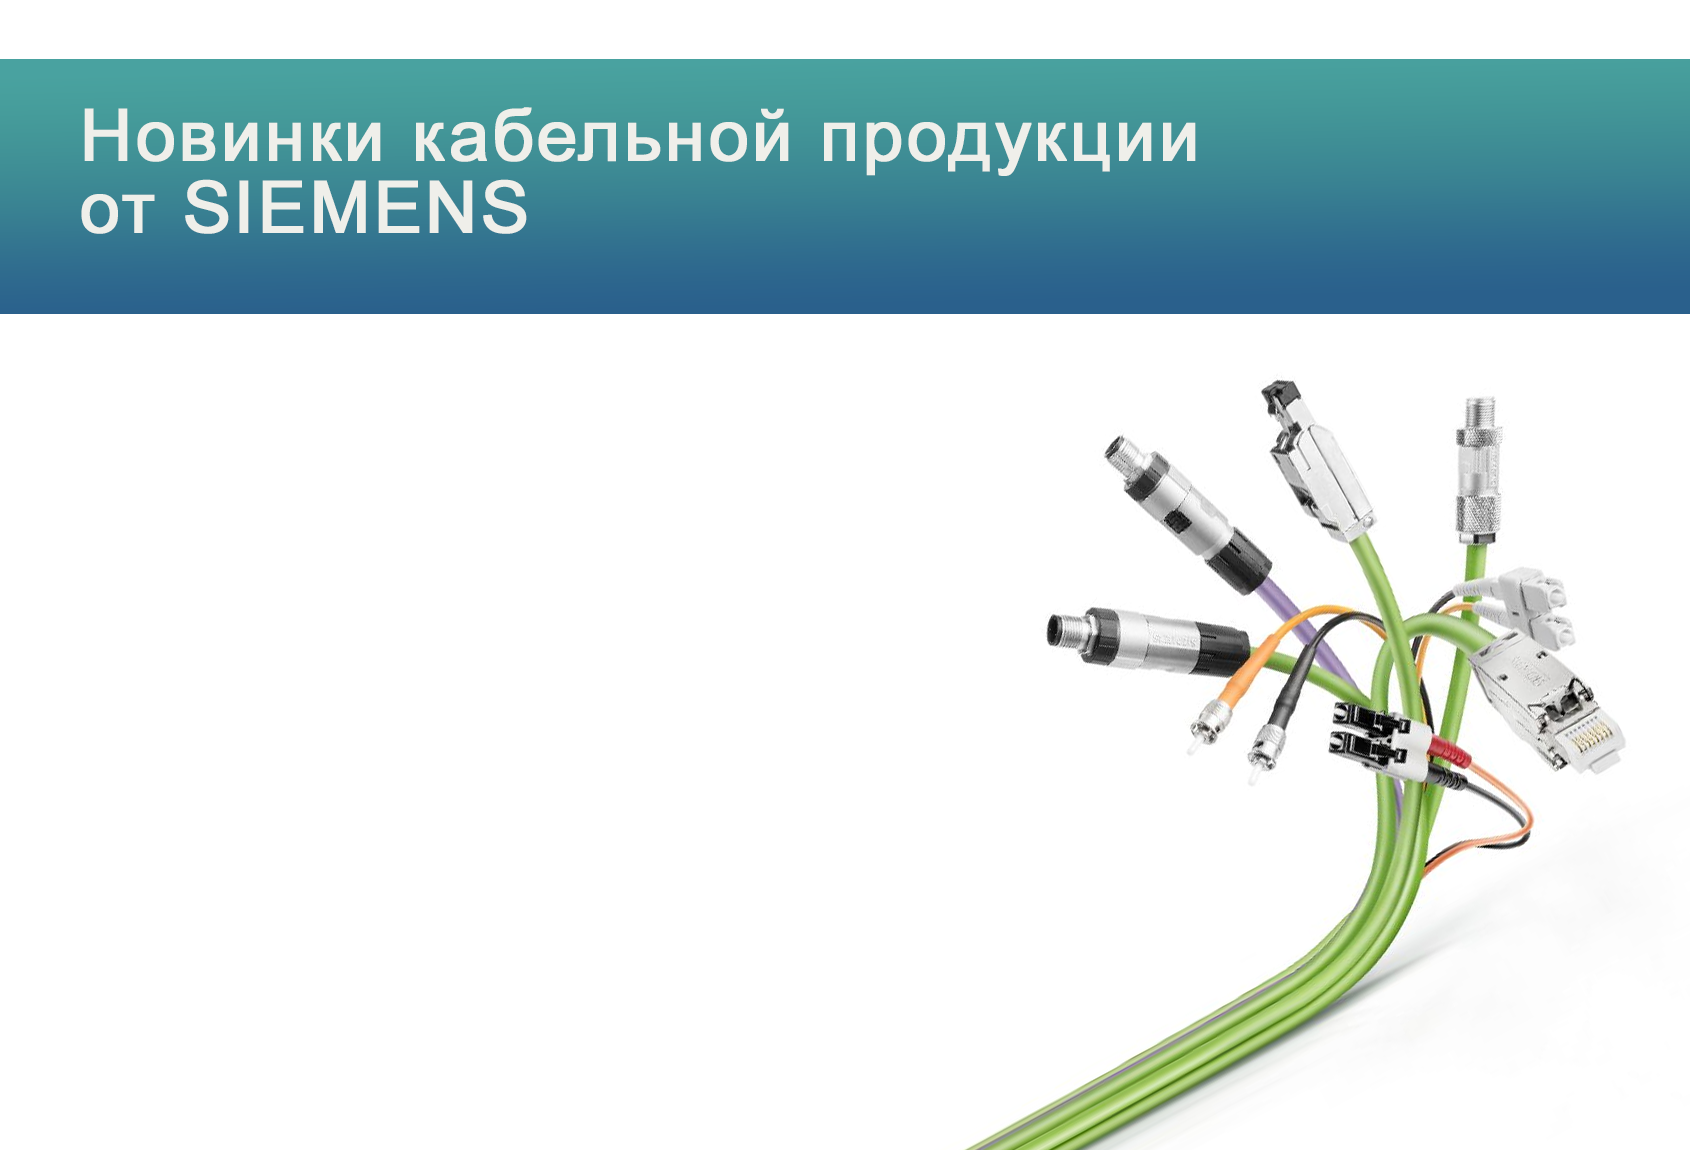 Новинки кабельной продукции Siemens<